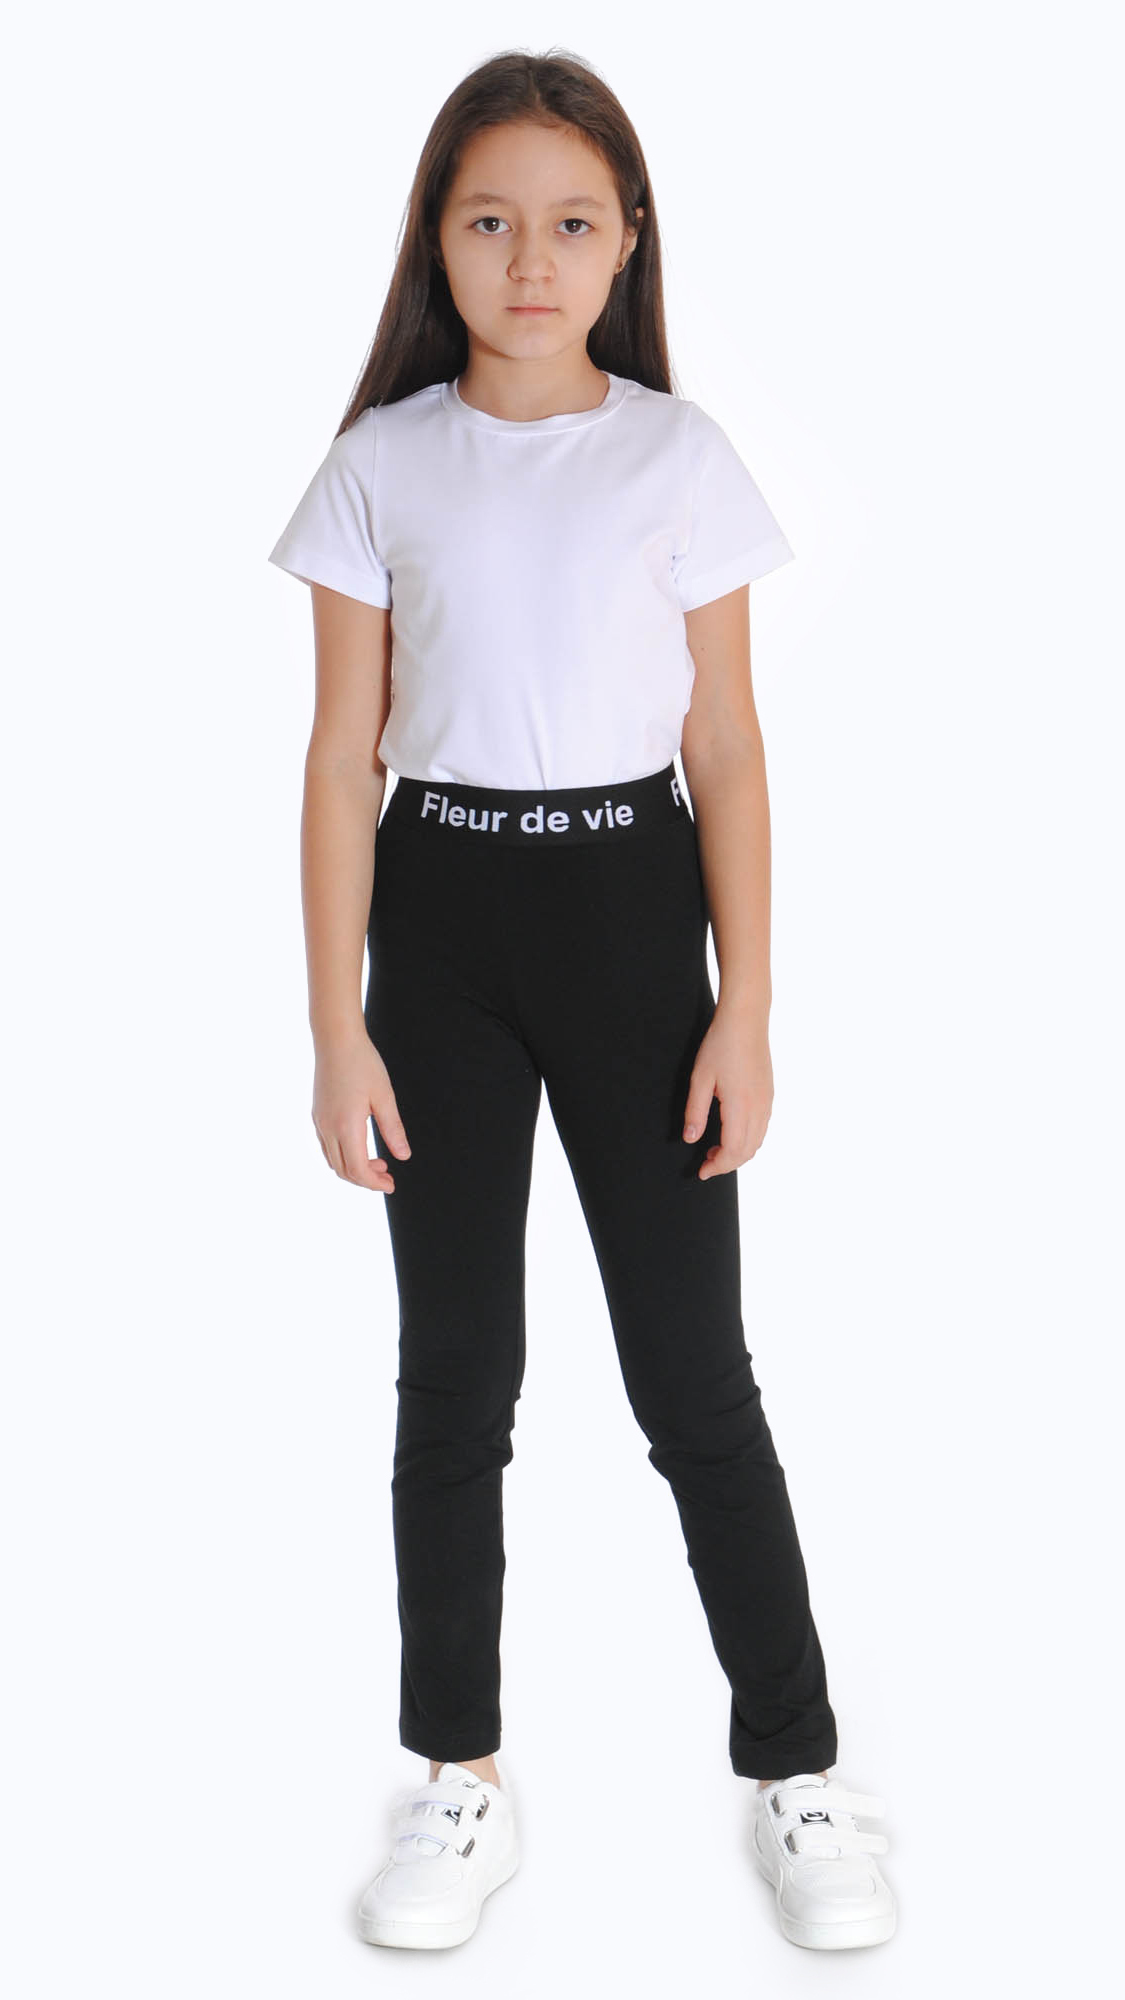 Fleur De Vie Детская Одежда Интернет Магазин